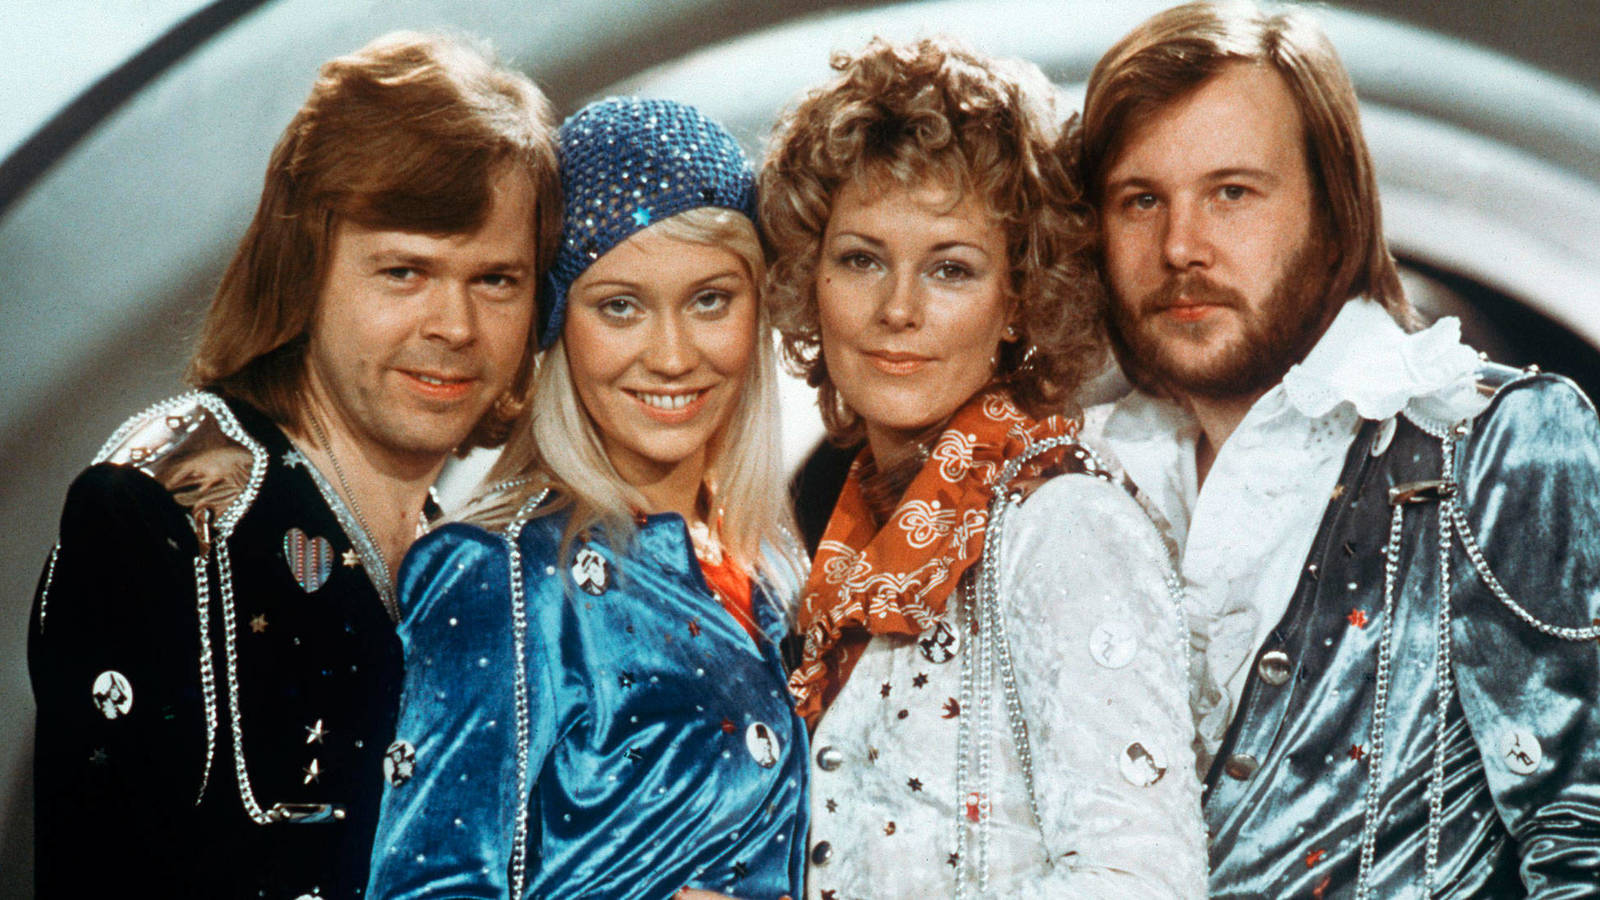 La banda ABBA lanzará tema luego de 35 años